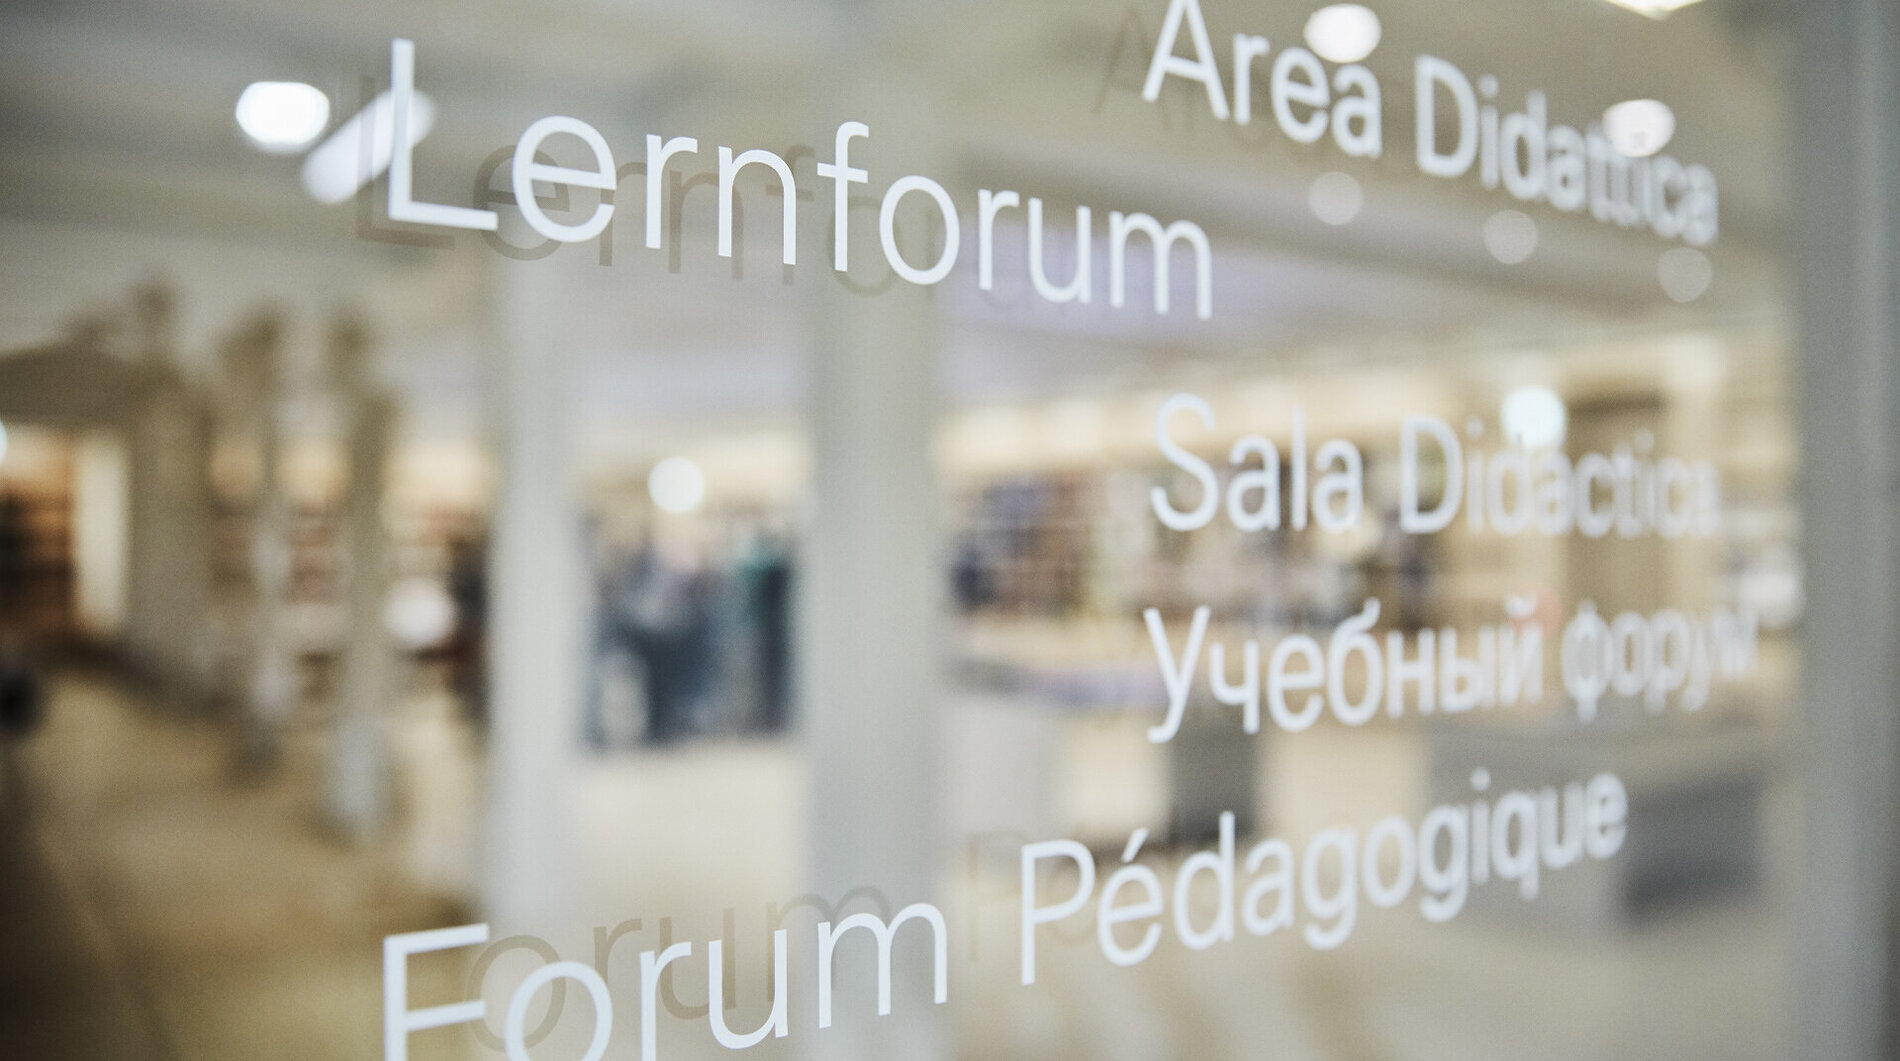 Auf der Eingangstür aus Glas steht das Wort ‚Lernforum‘ auf fünf verschiedenen Sprachen.